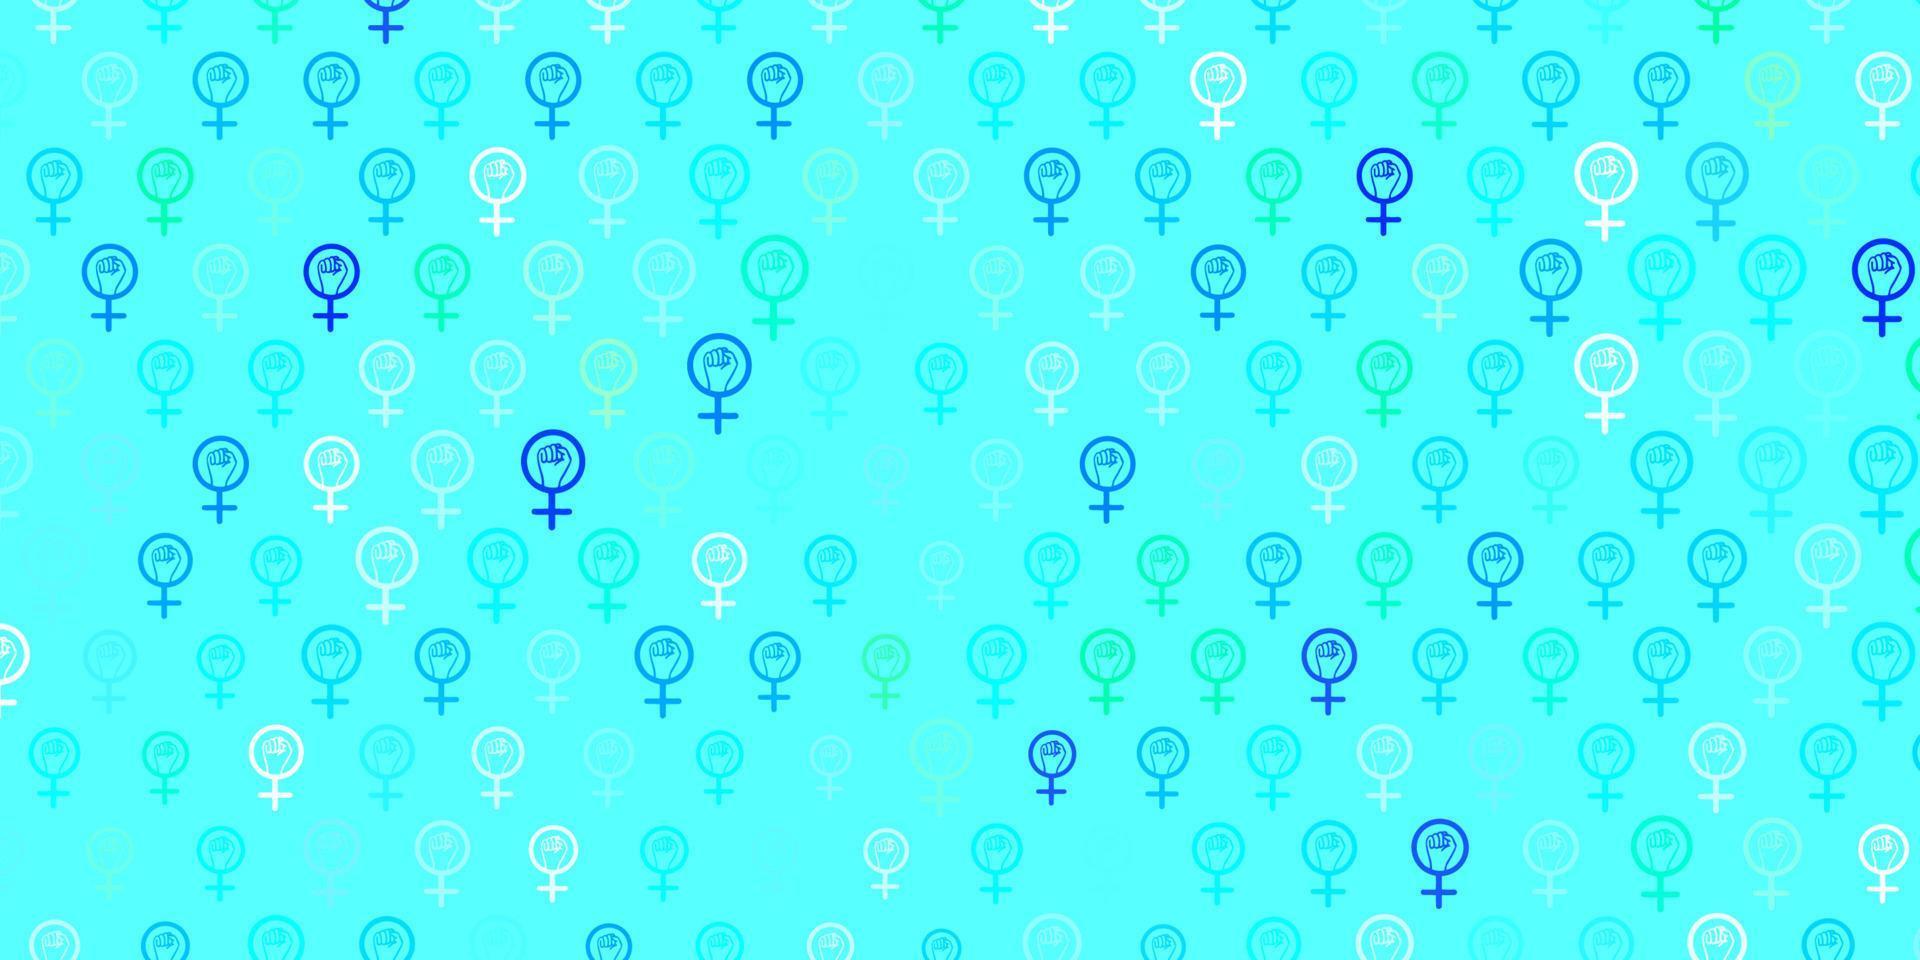 padrão de vetor azul claro e verde com elementos do feminismo.